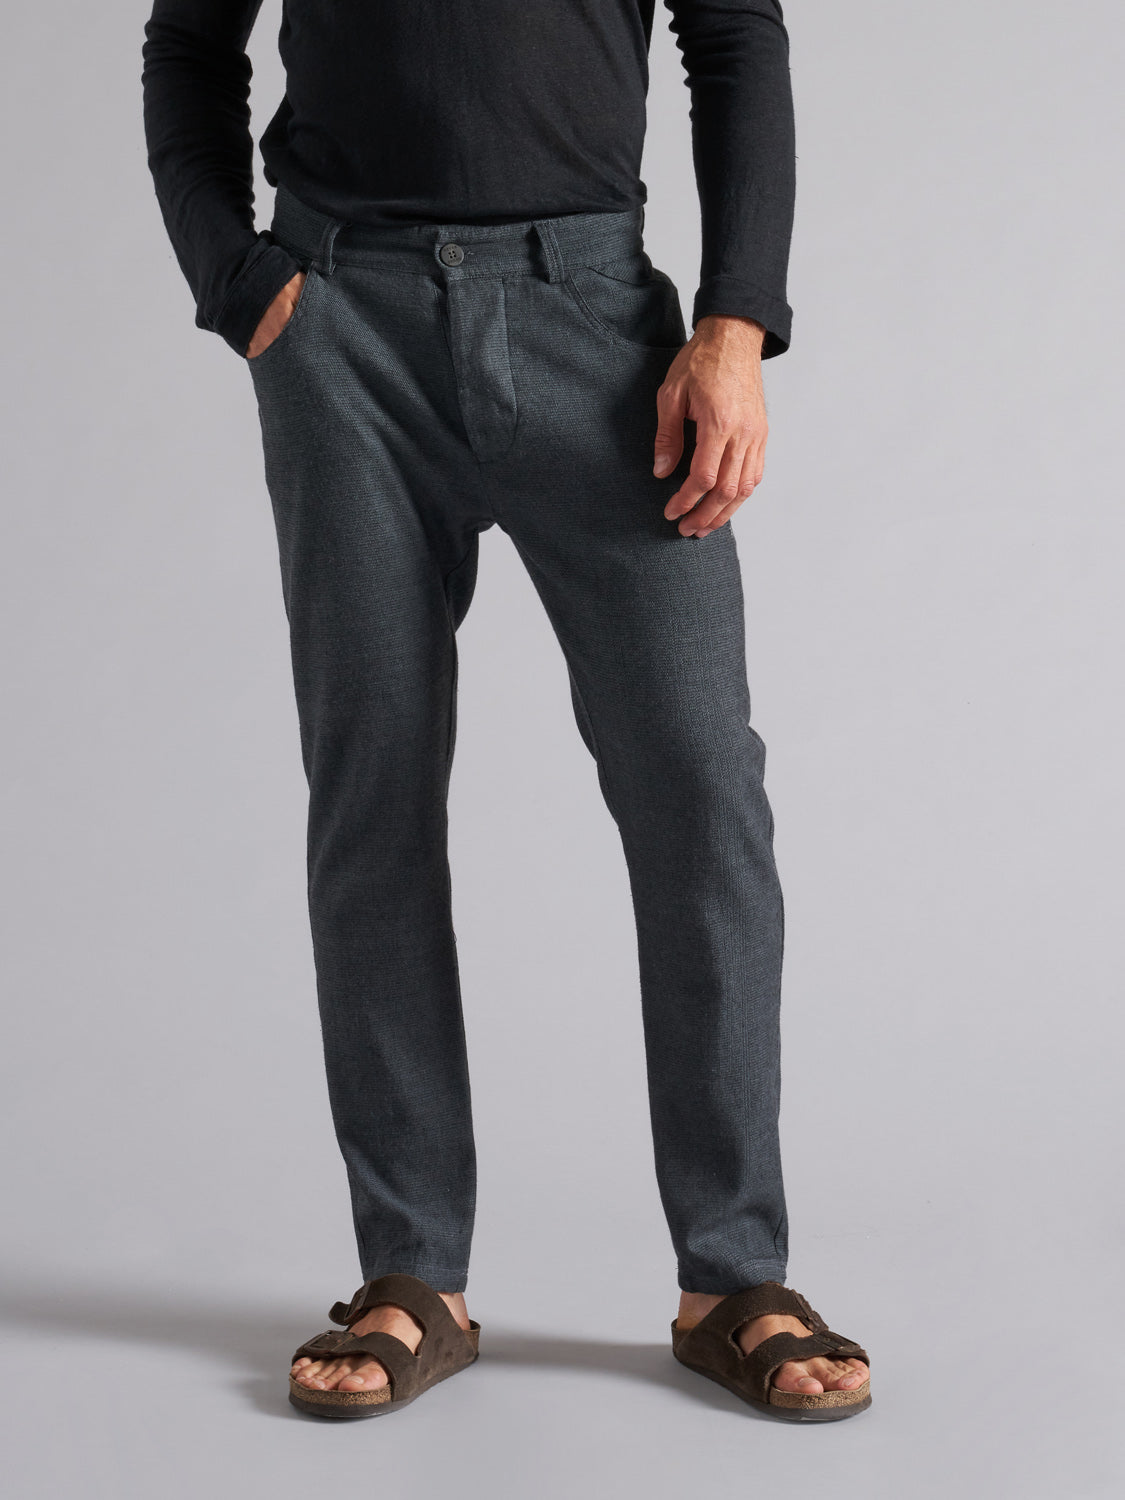 Pantalone in lino-cotone uomo MPA049